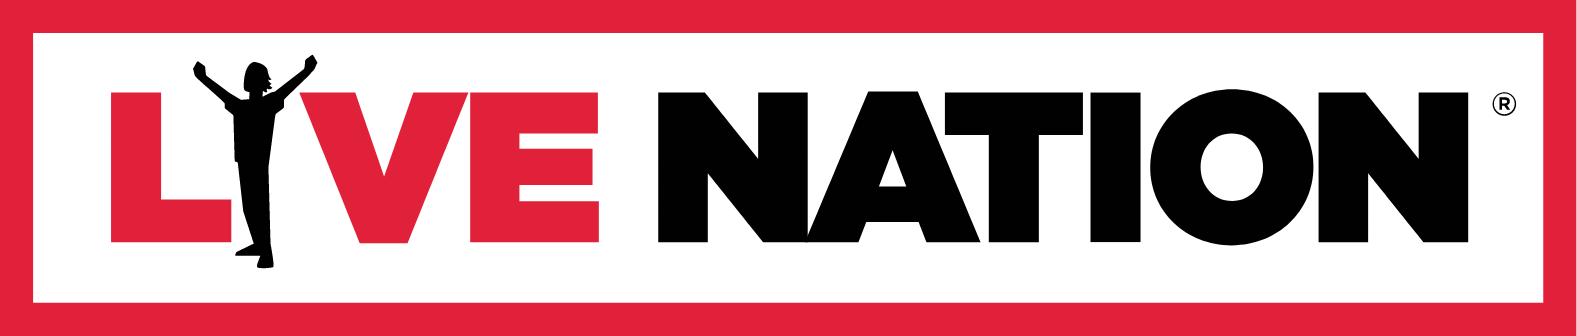 Live Nation
 logo large (transparent PNG)